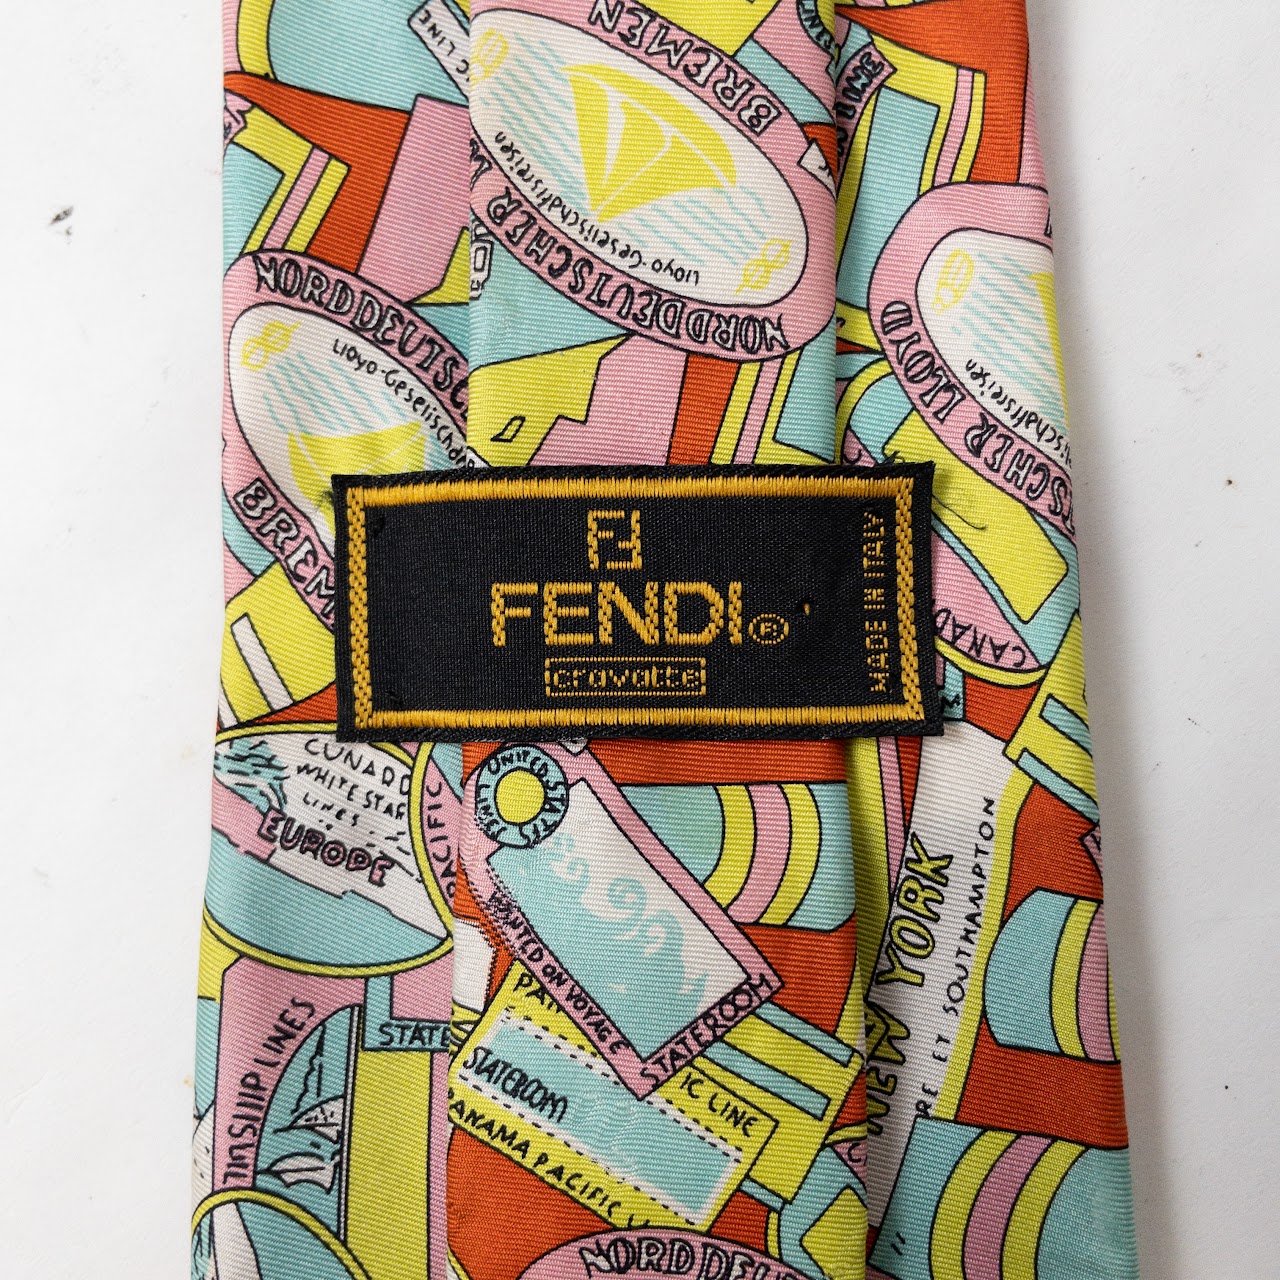 Fendi Travel Sticker Print Necktie